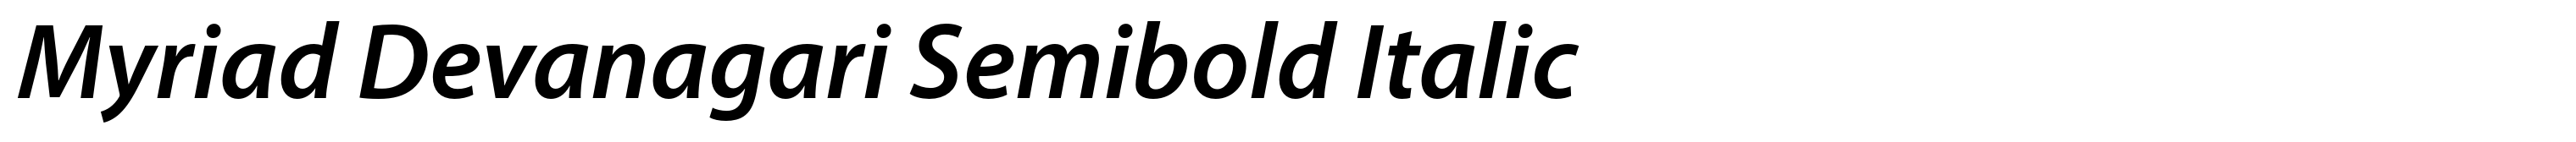 Myriad Devanagari Semibold Italic